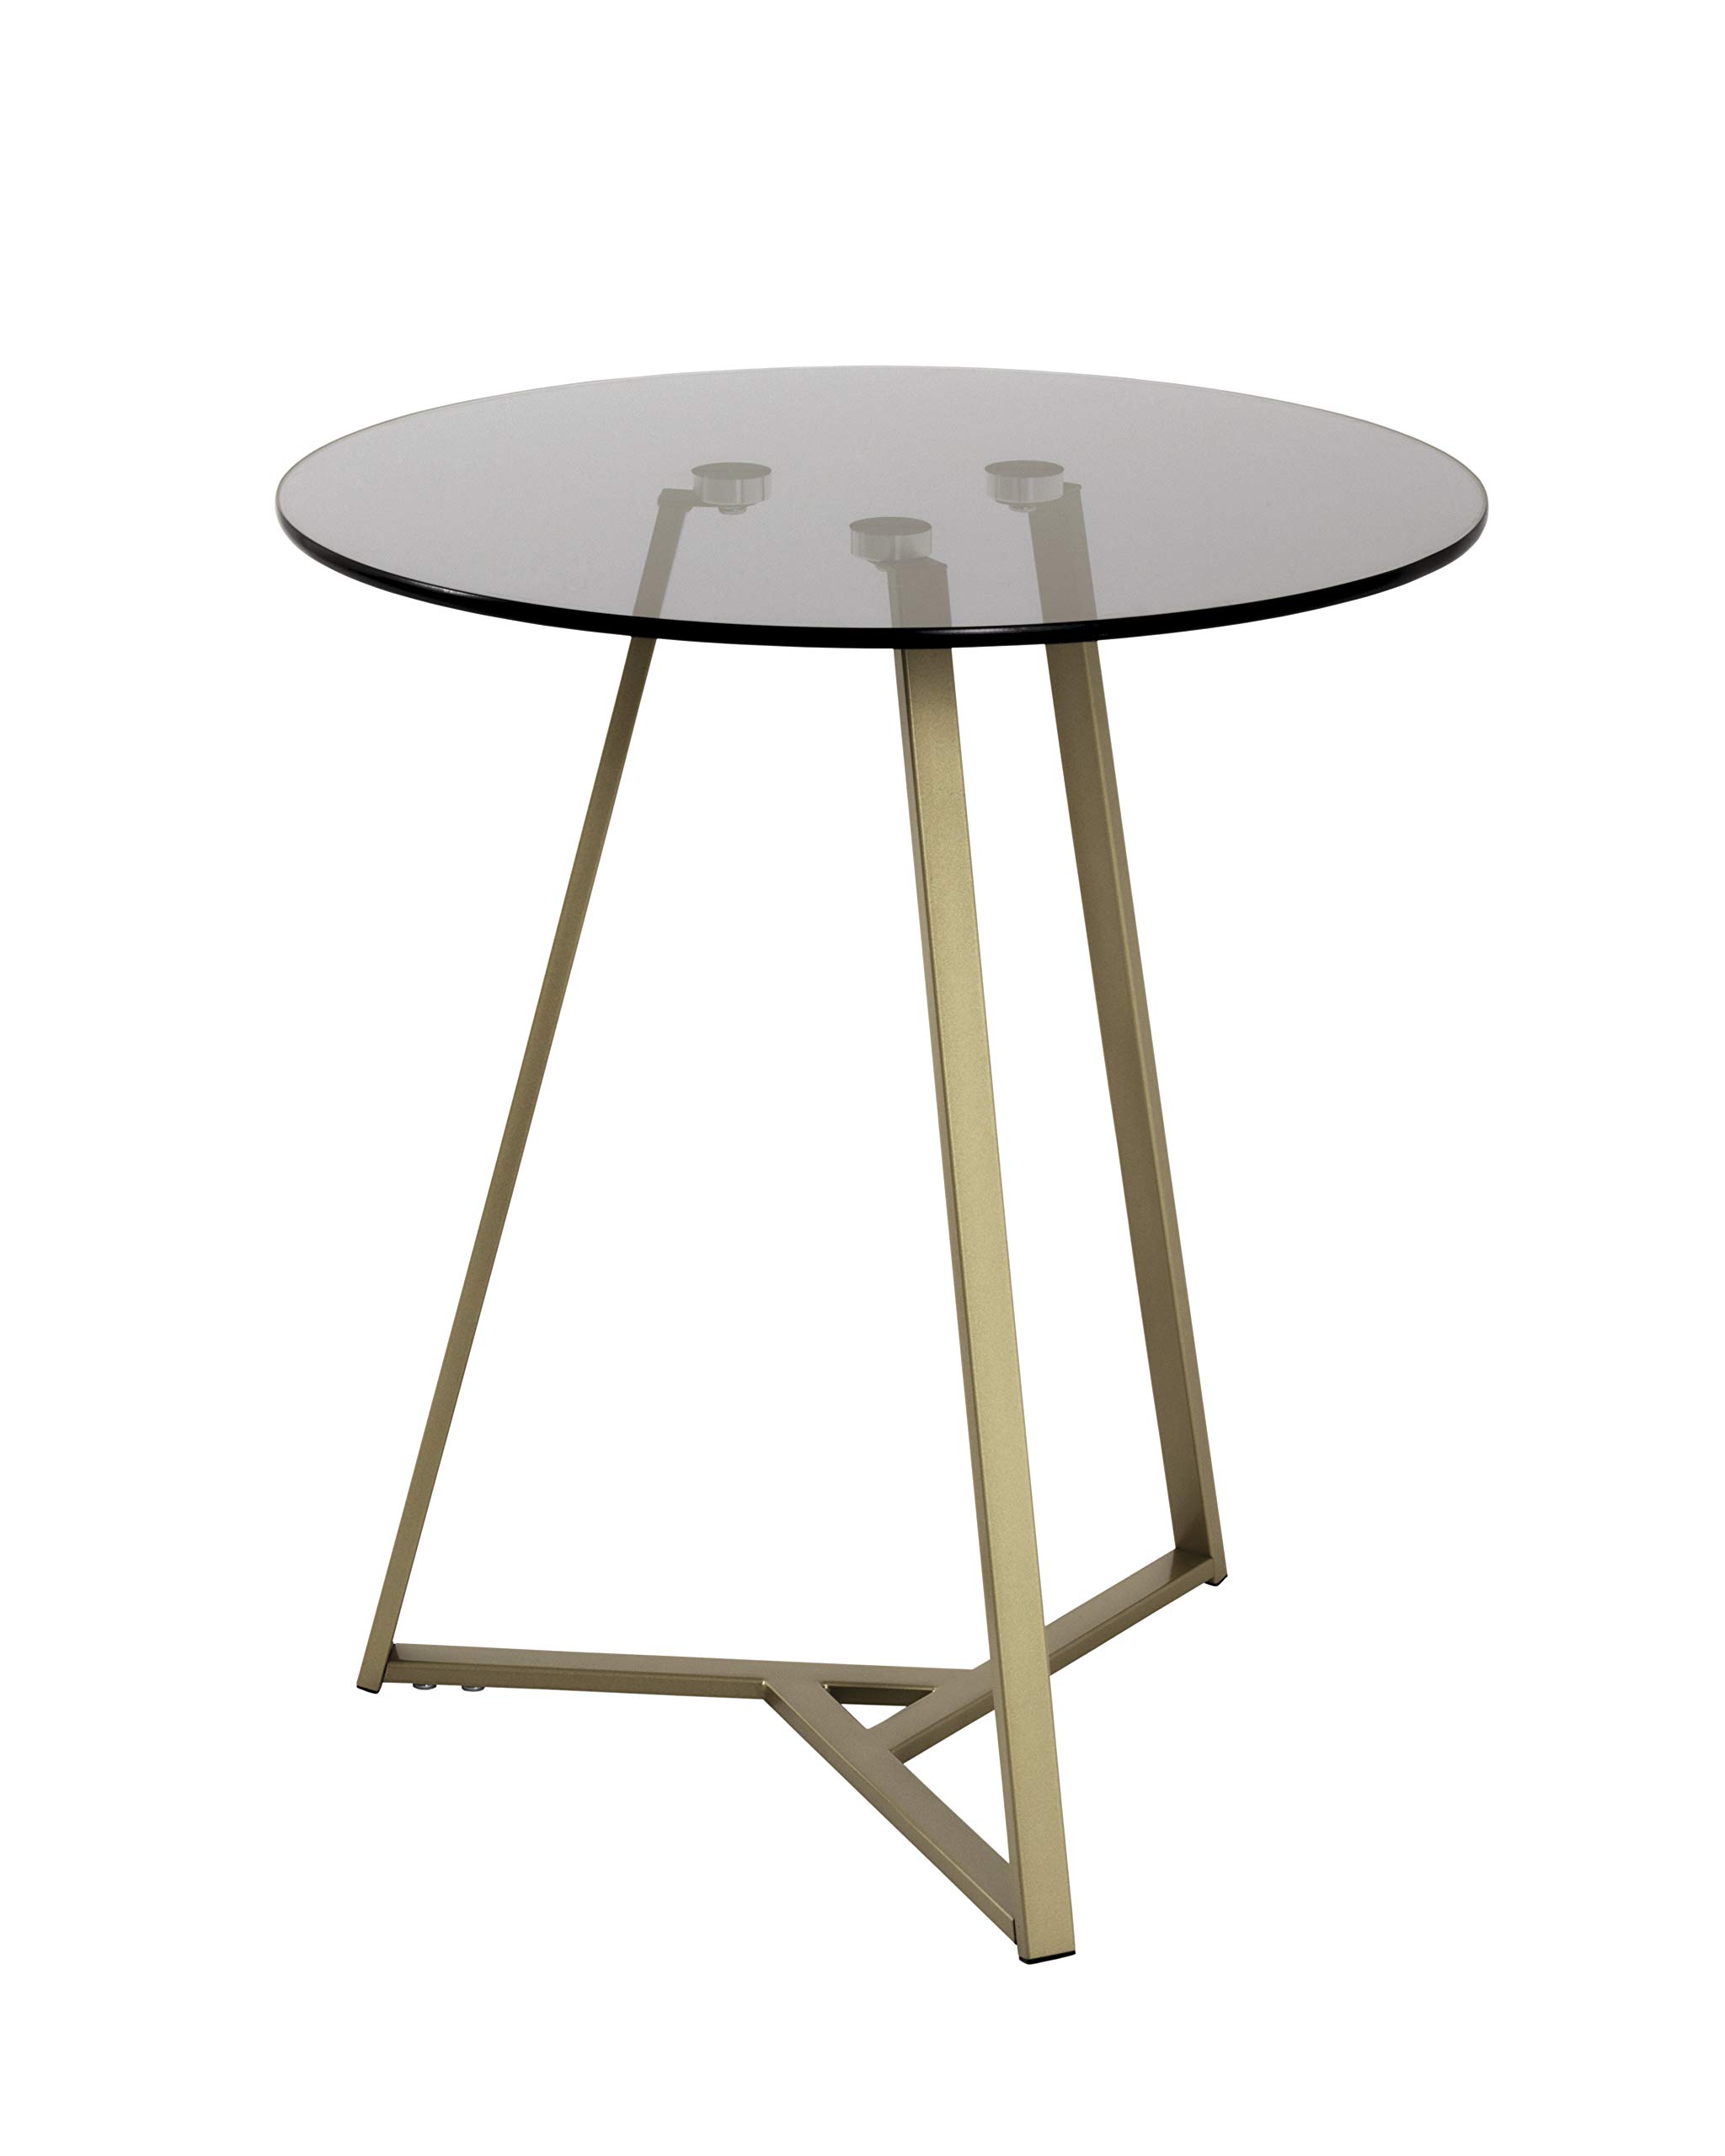 HAKU Möbel Beistelltisch, Metall, gold-grau, Ø 45 x H 50 cm